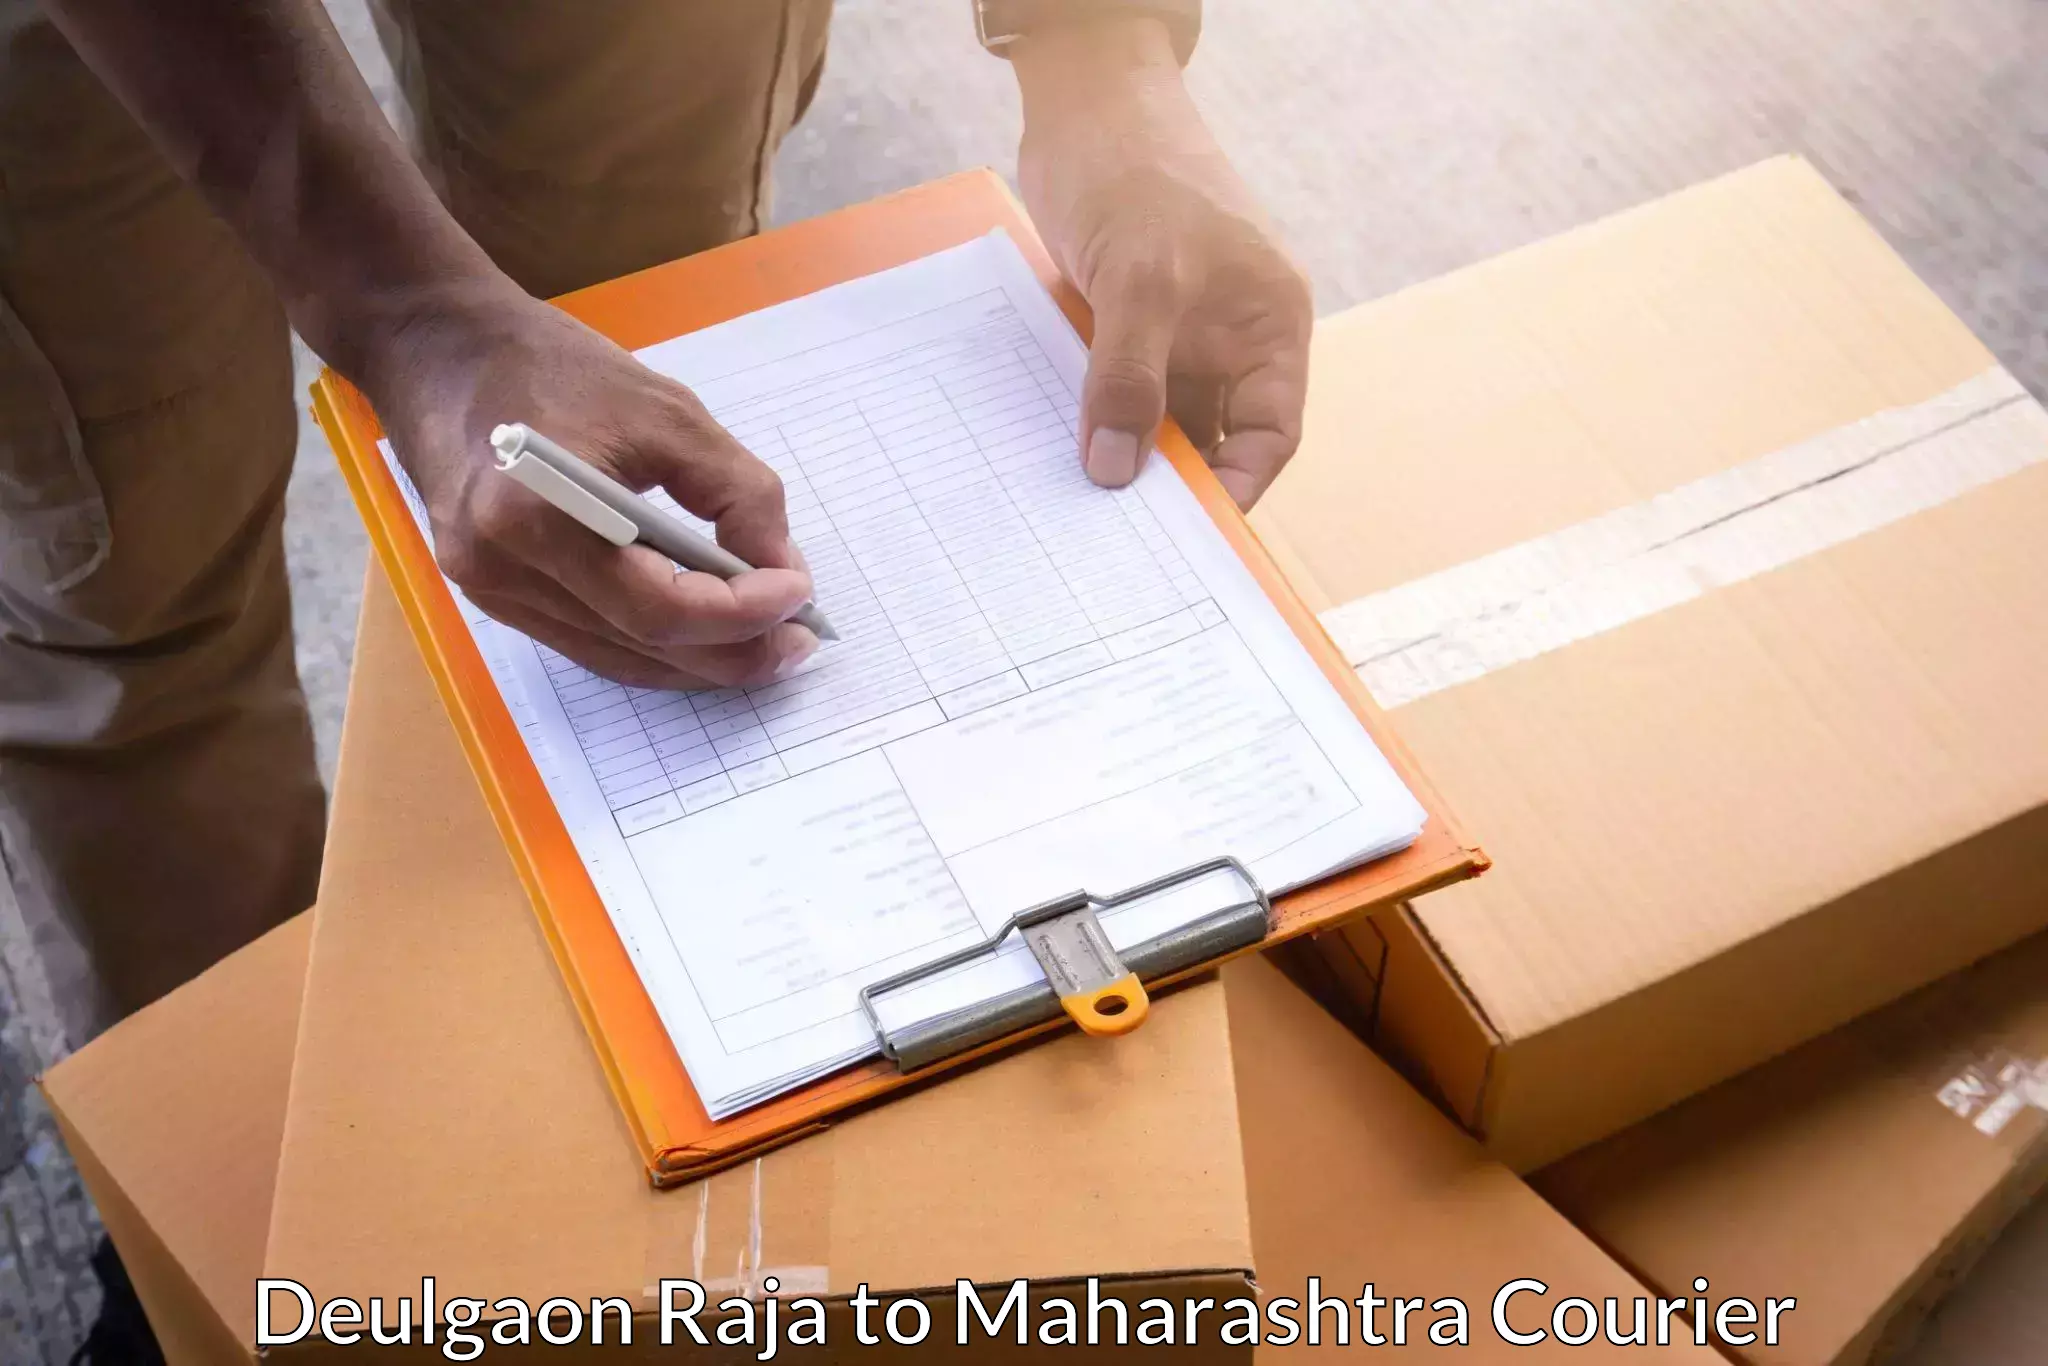 Automated parcel services Deulgaon Raja to Aheri